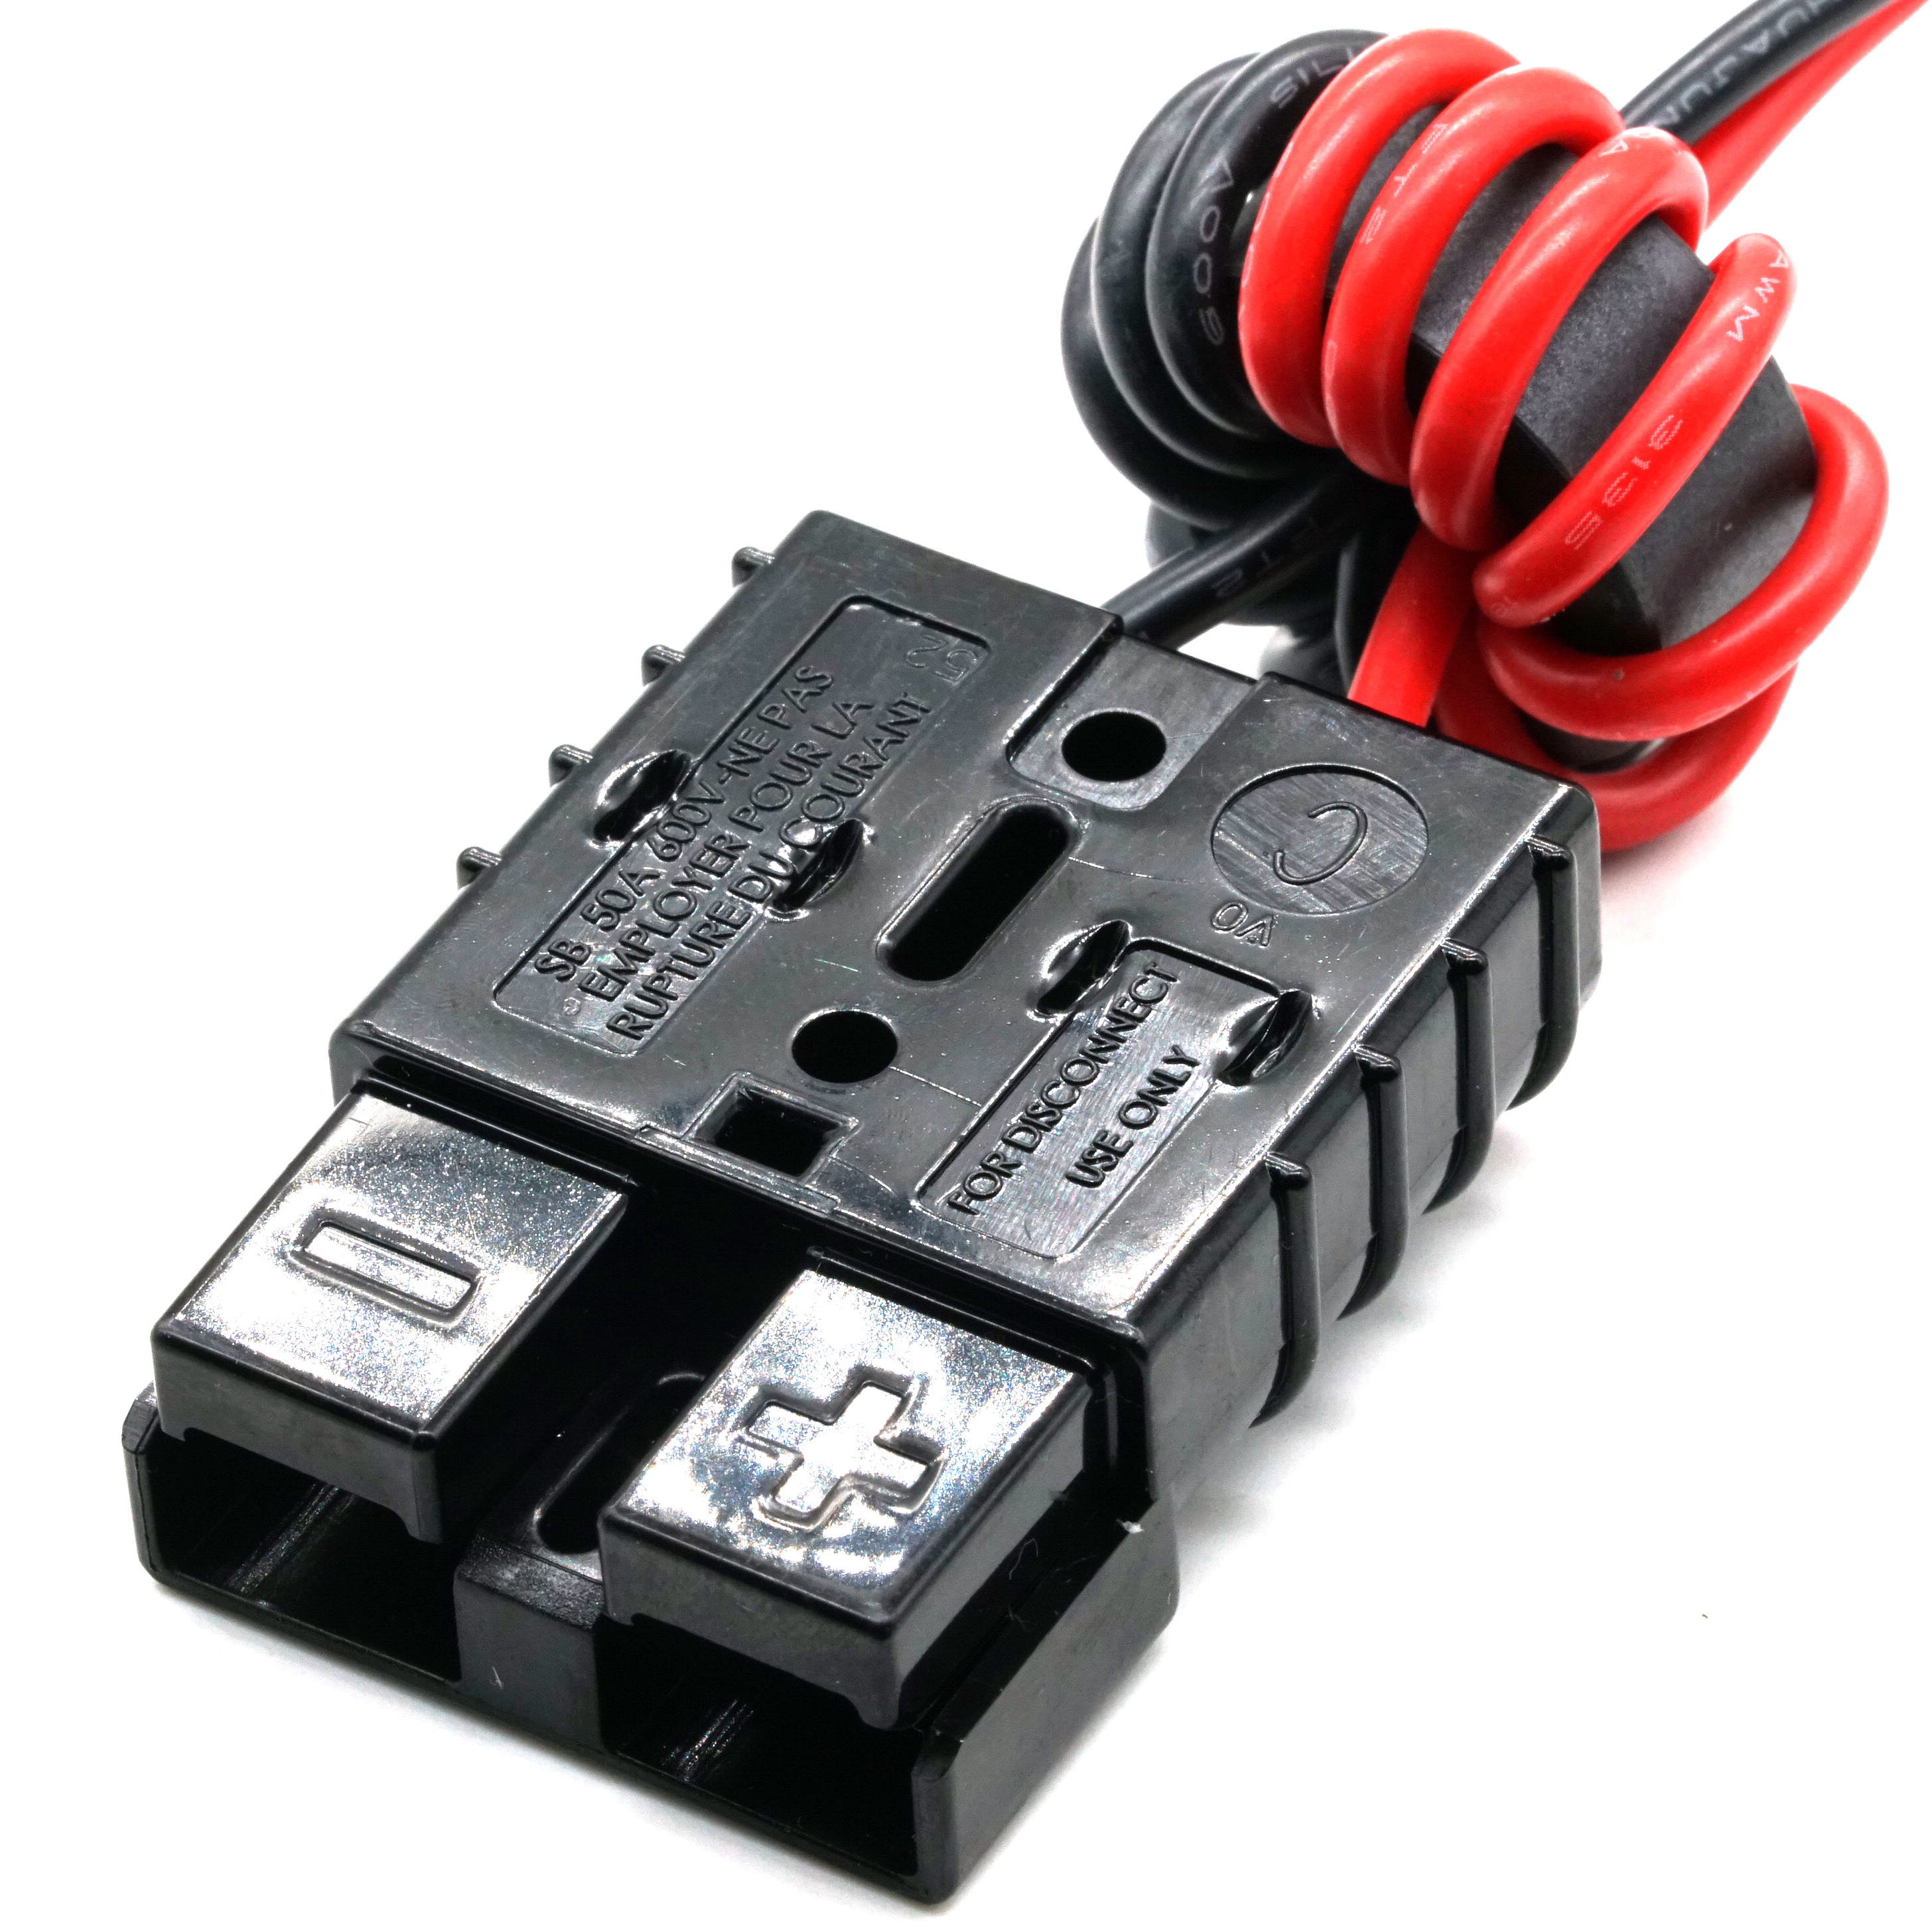 Conector de alimentación Anderson para desconectar el mazo de cables de ferrita antiinterferencias con enchufe XT30